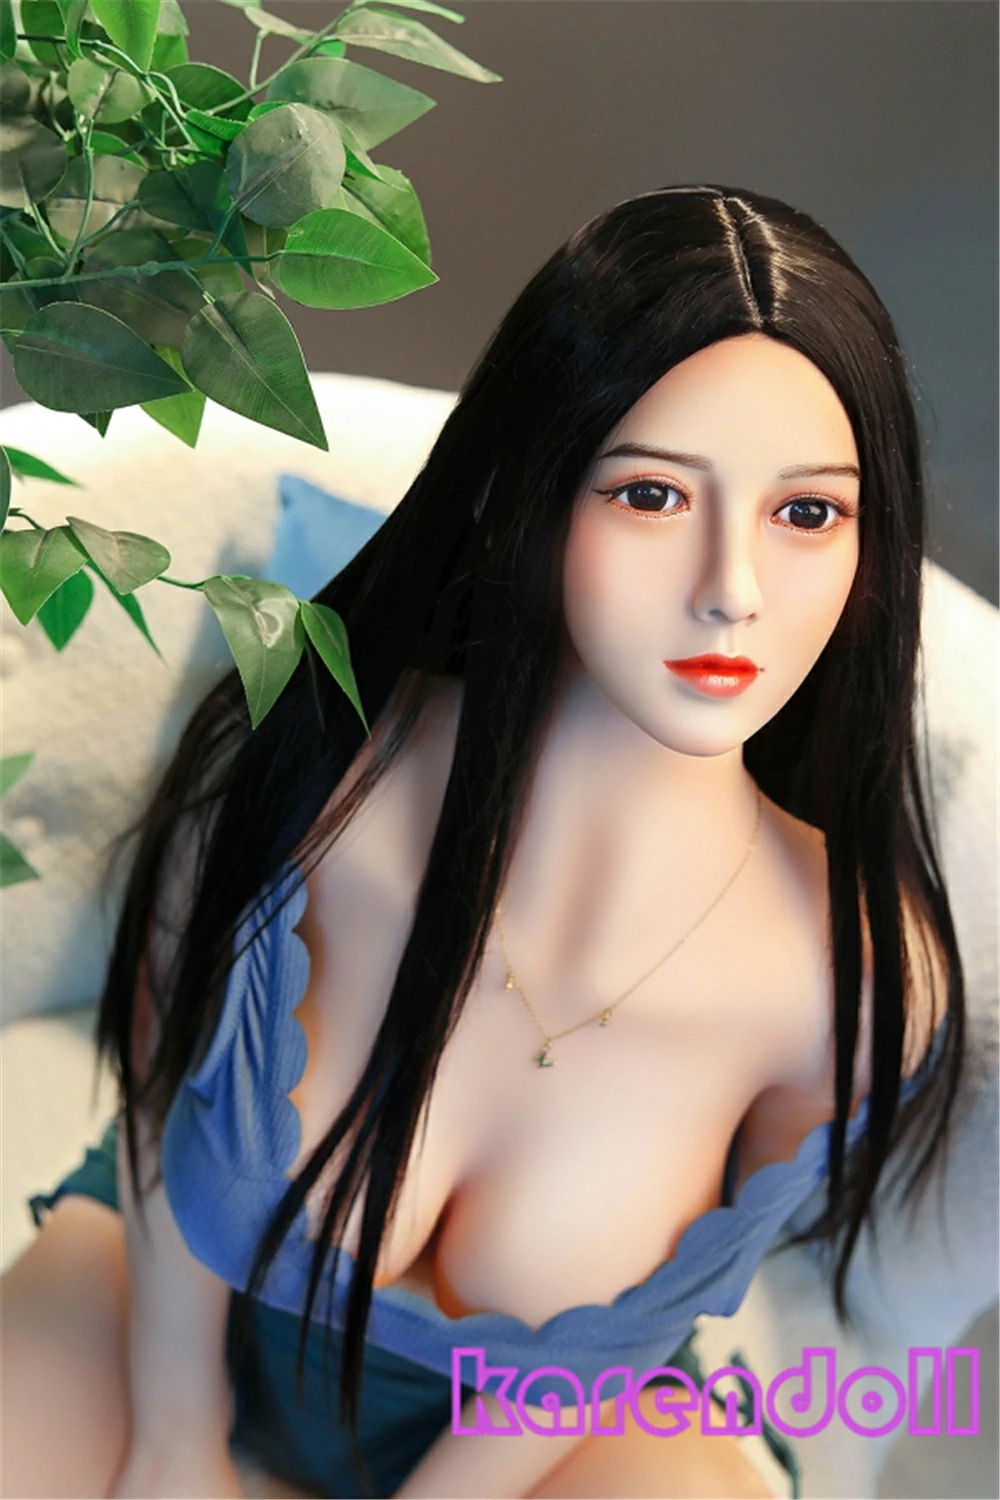 小胸リアルダッチワイフ加奈 158cm SY Doll#221 tpe製